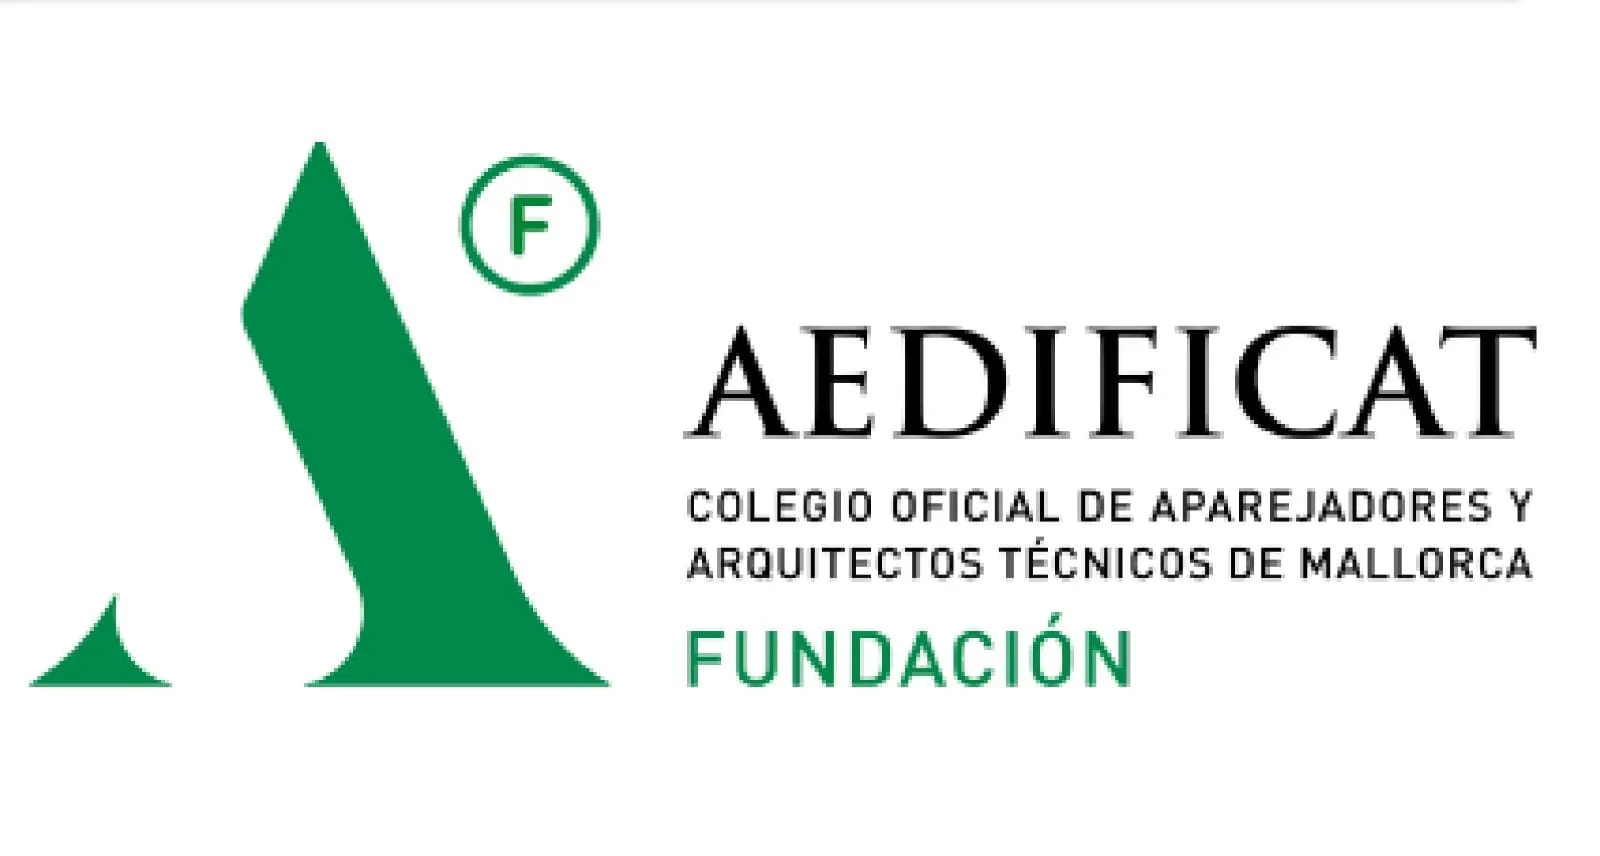 Fundación AEDIFICAT